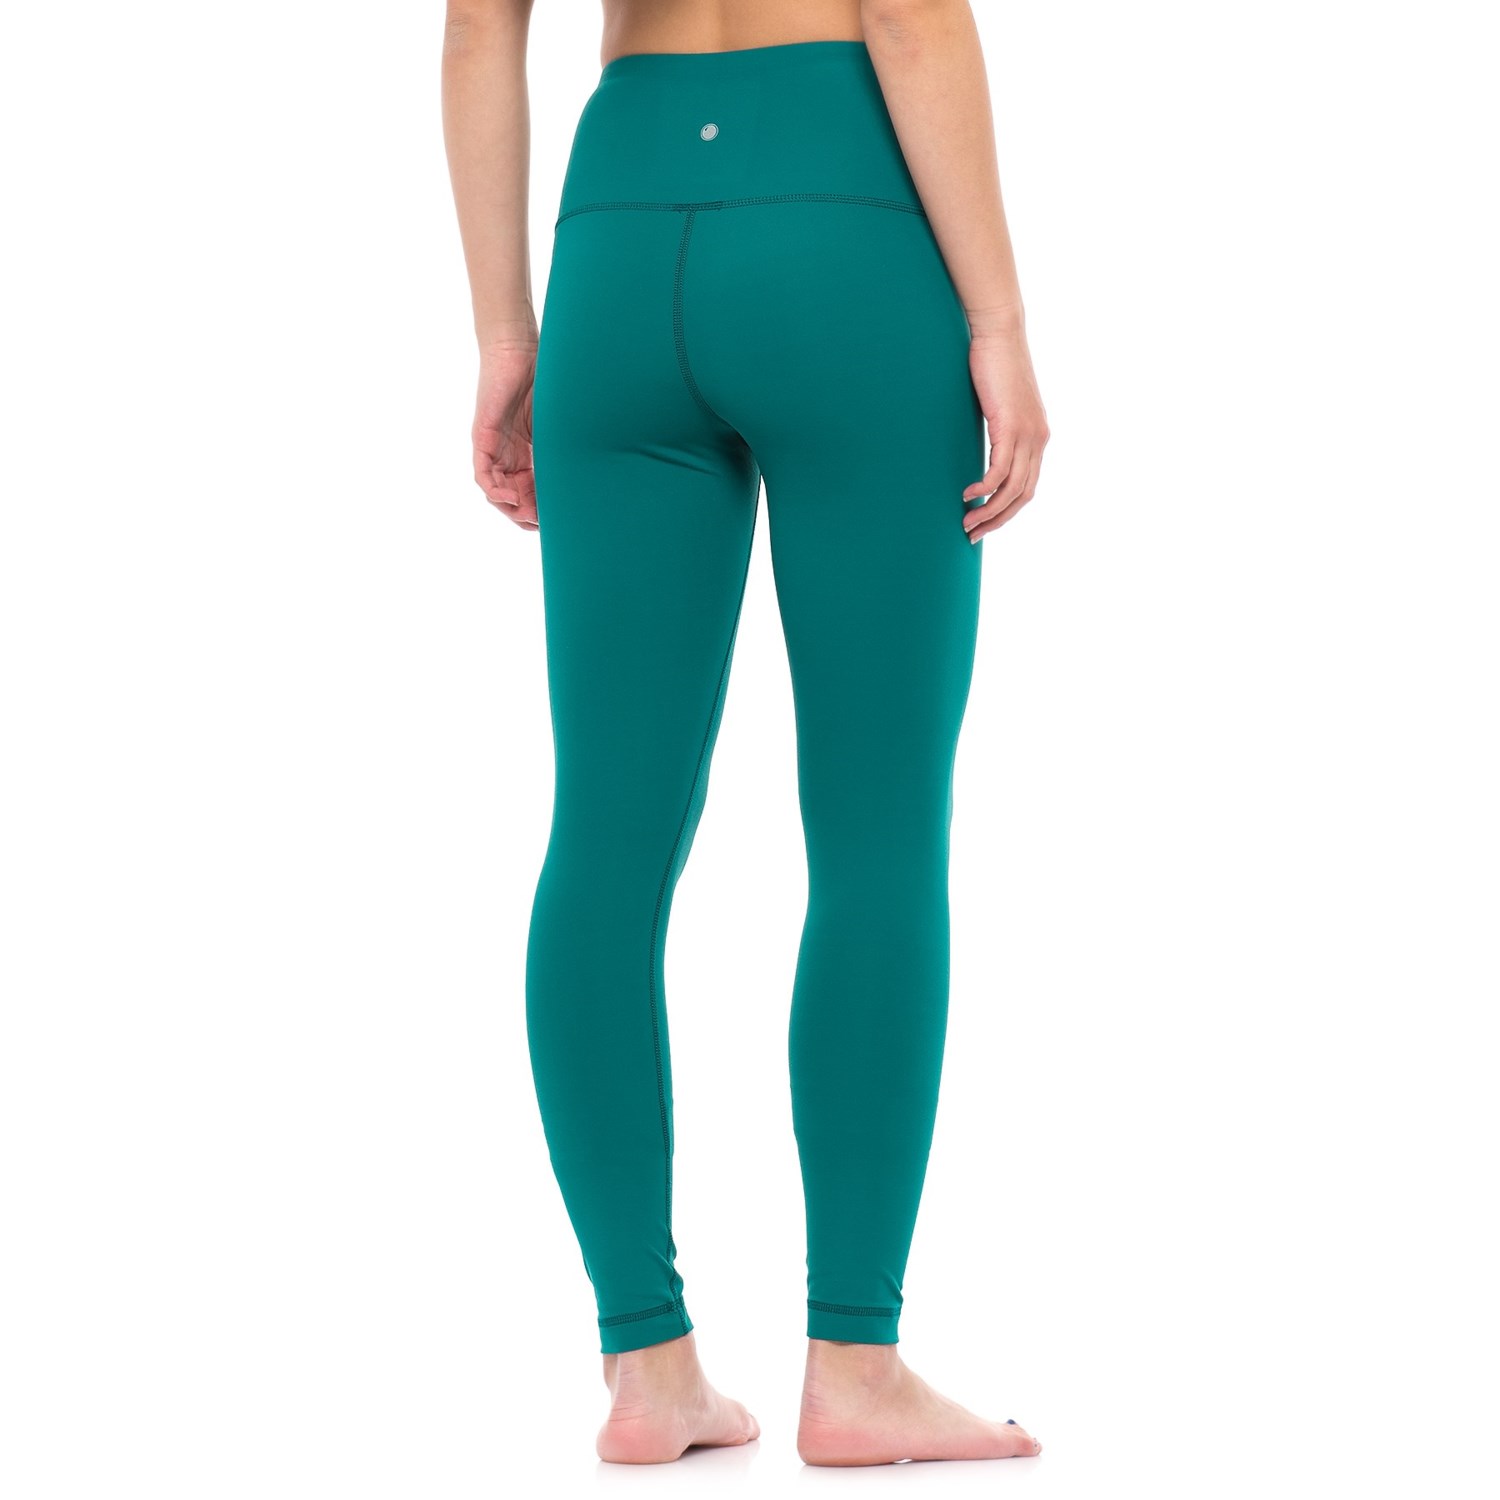 yogalicious leggings review